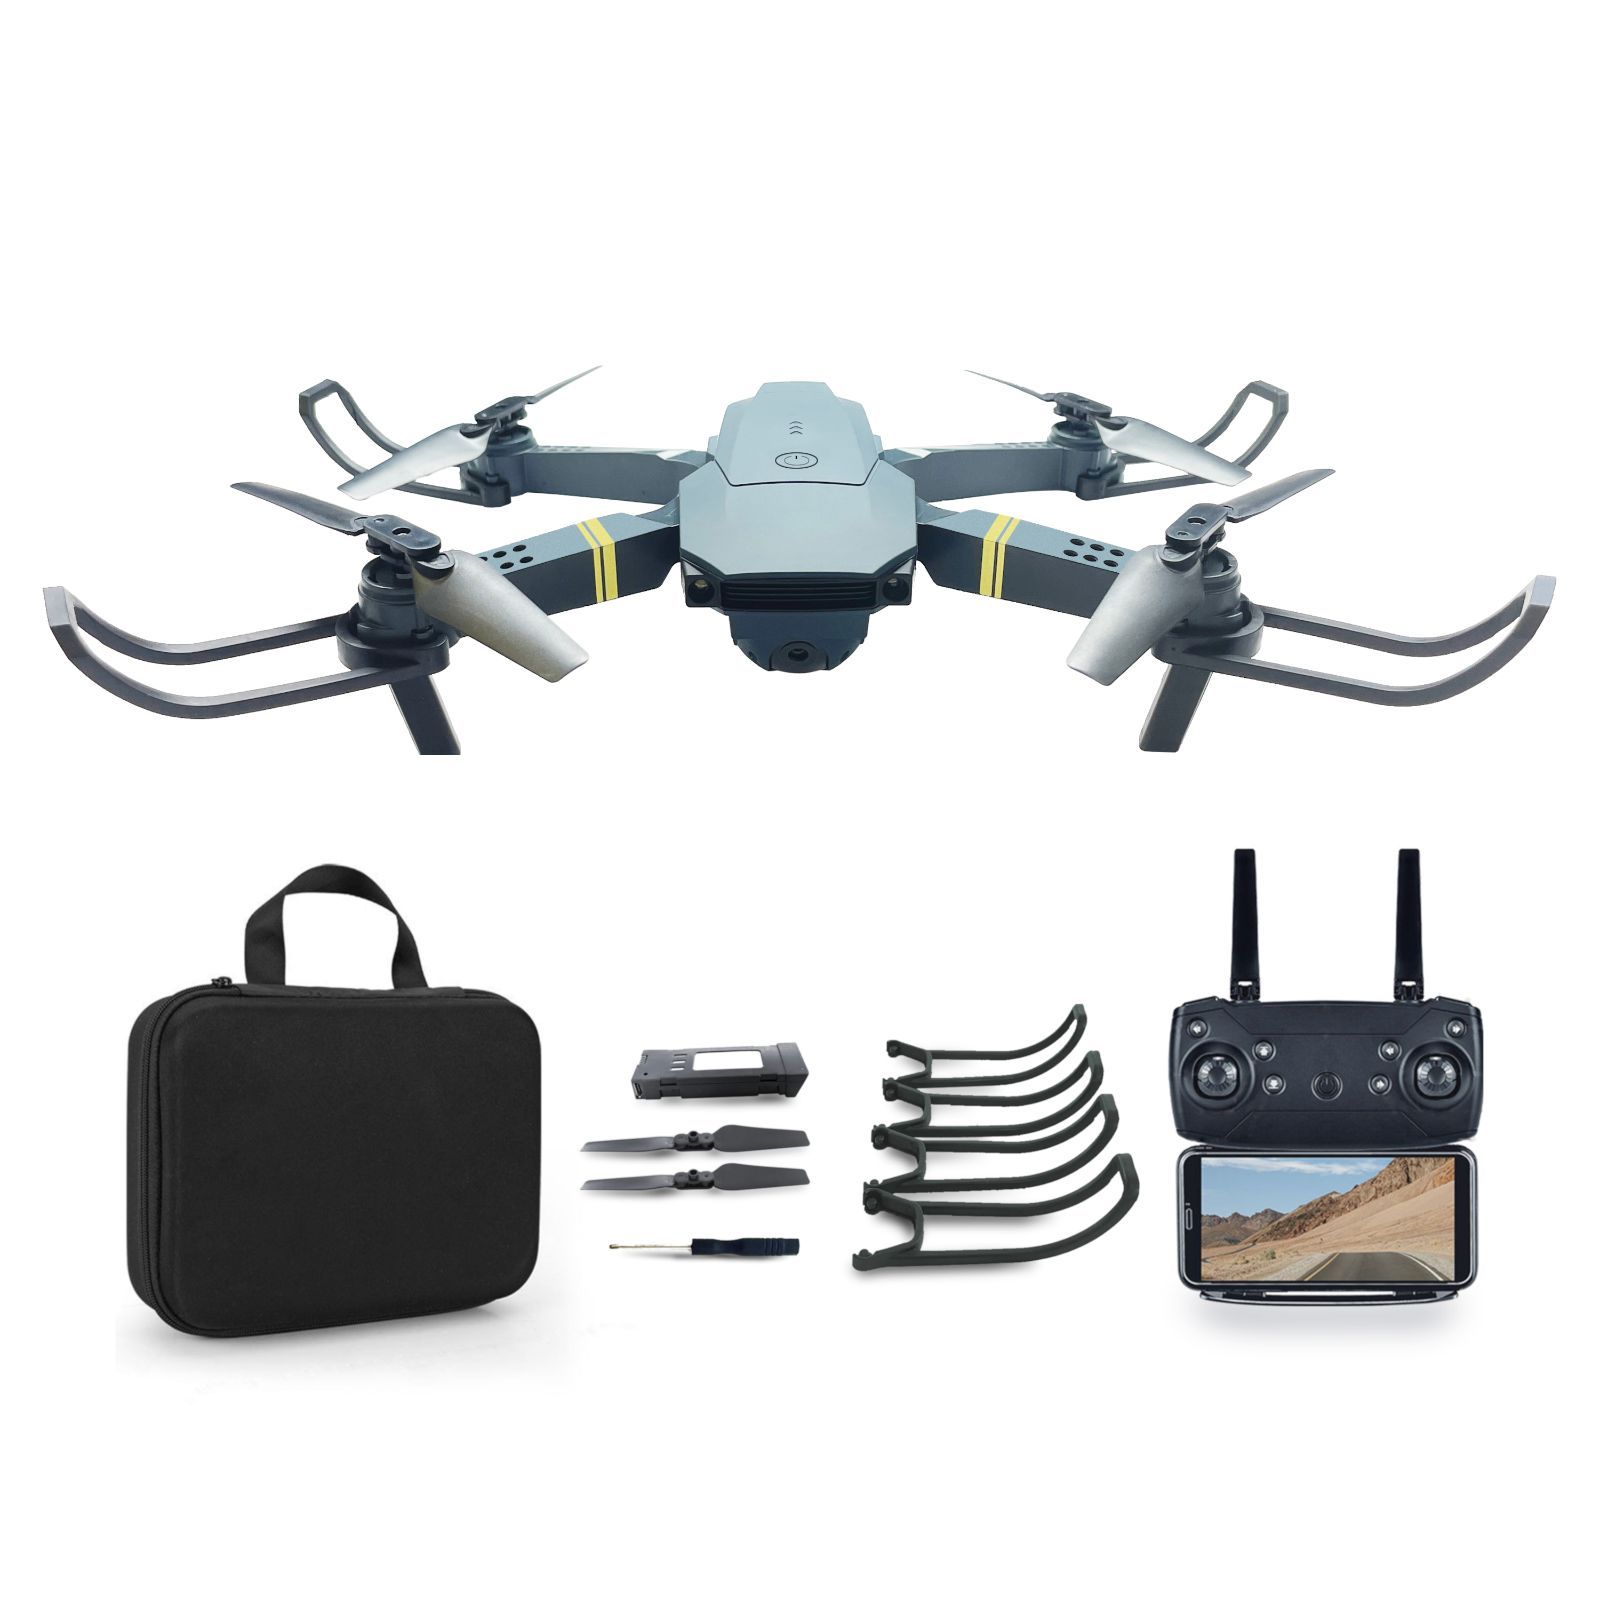 ドローン カメラ付き 屋外 100g未満 2カメラ搭載 ドローン野外 drone